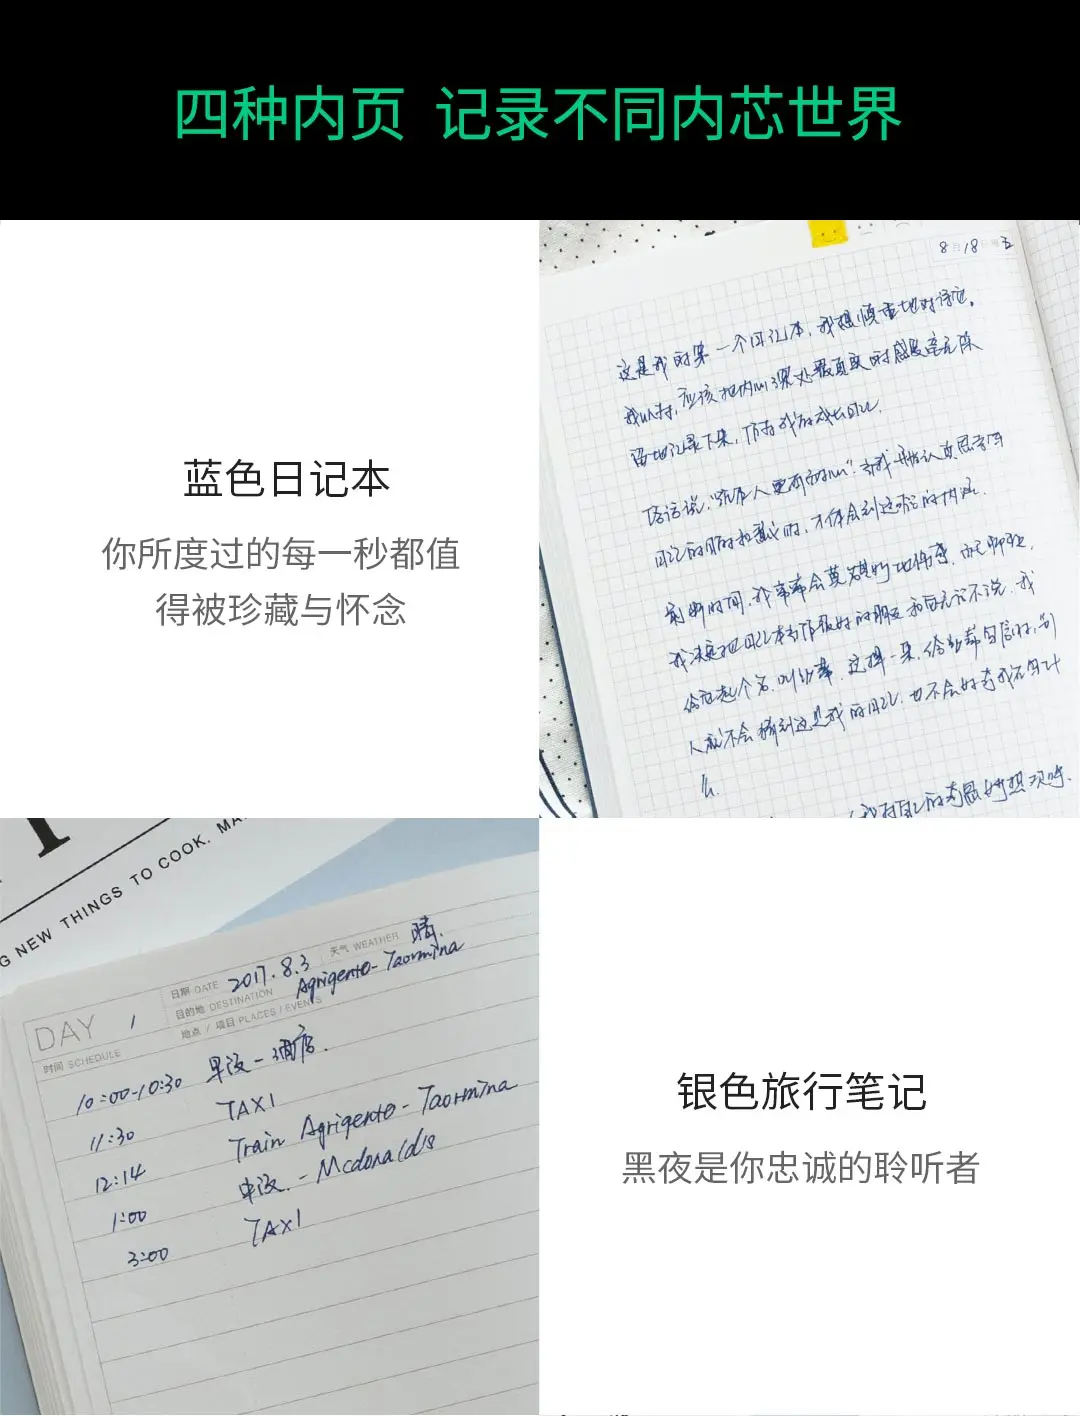 Xiaomi B6 Тетрадь дневной свет книга обратно мы положим изделия в 4 разных внутренние страницы Тетрадь дневник блокнот для записей, офисные